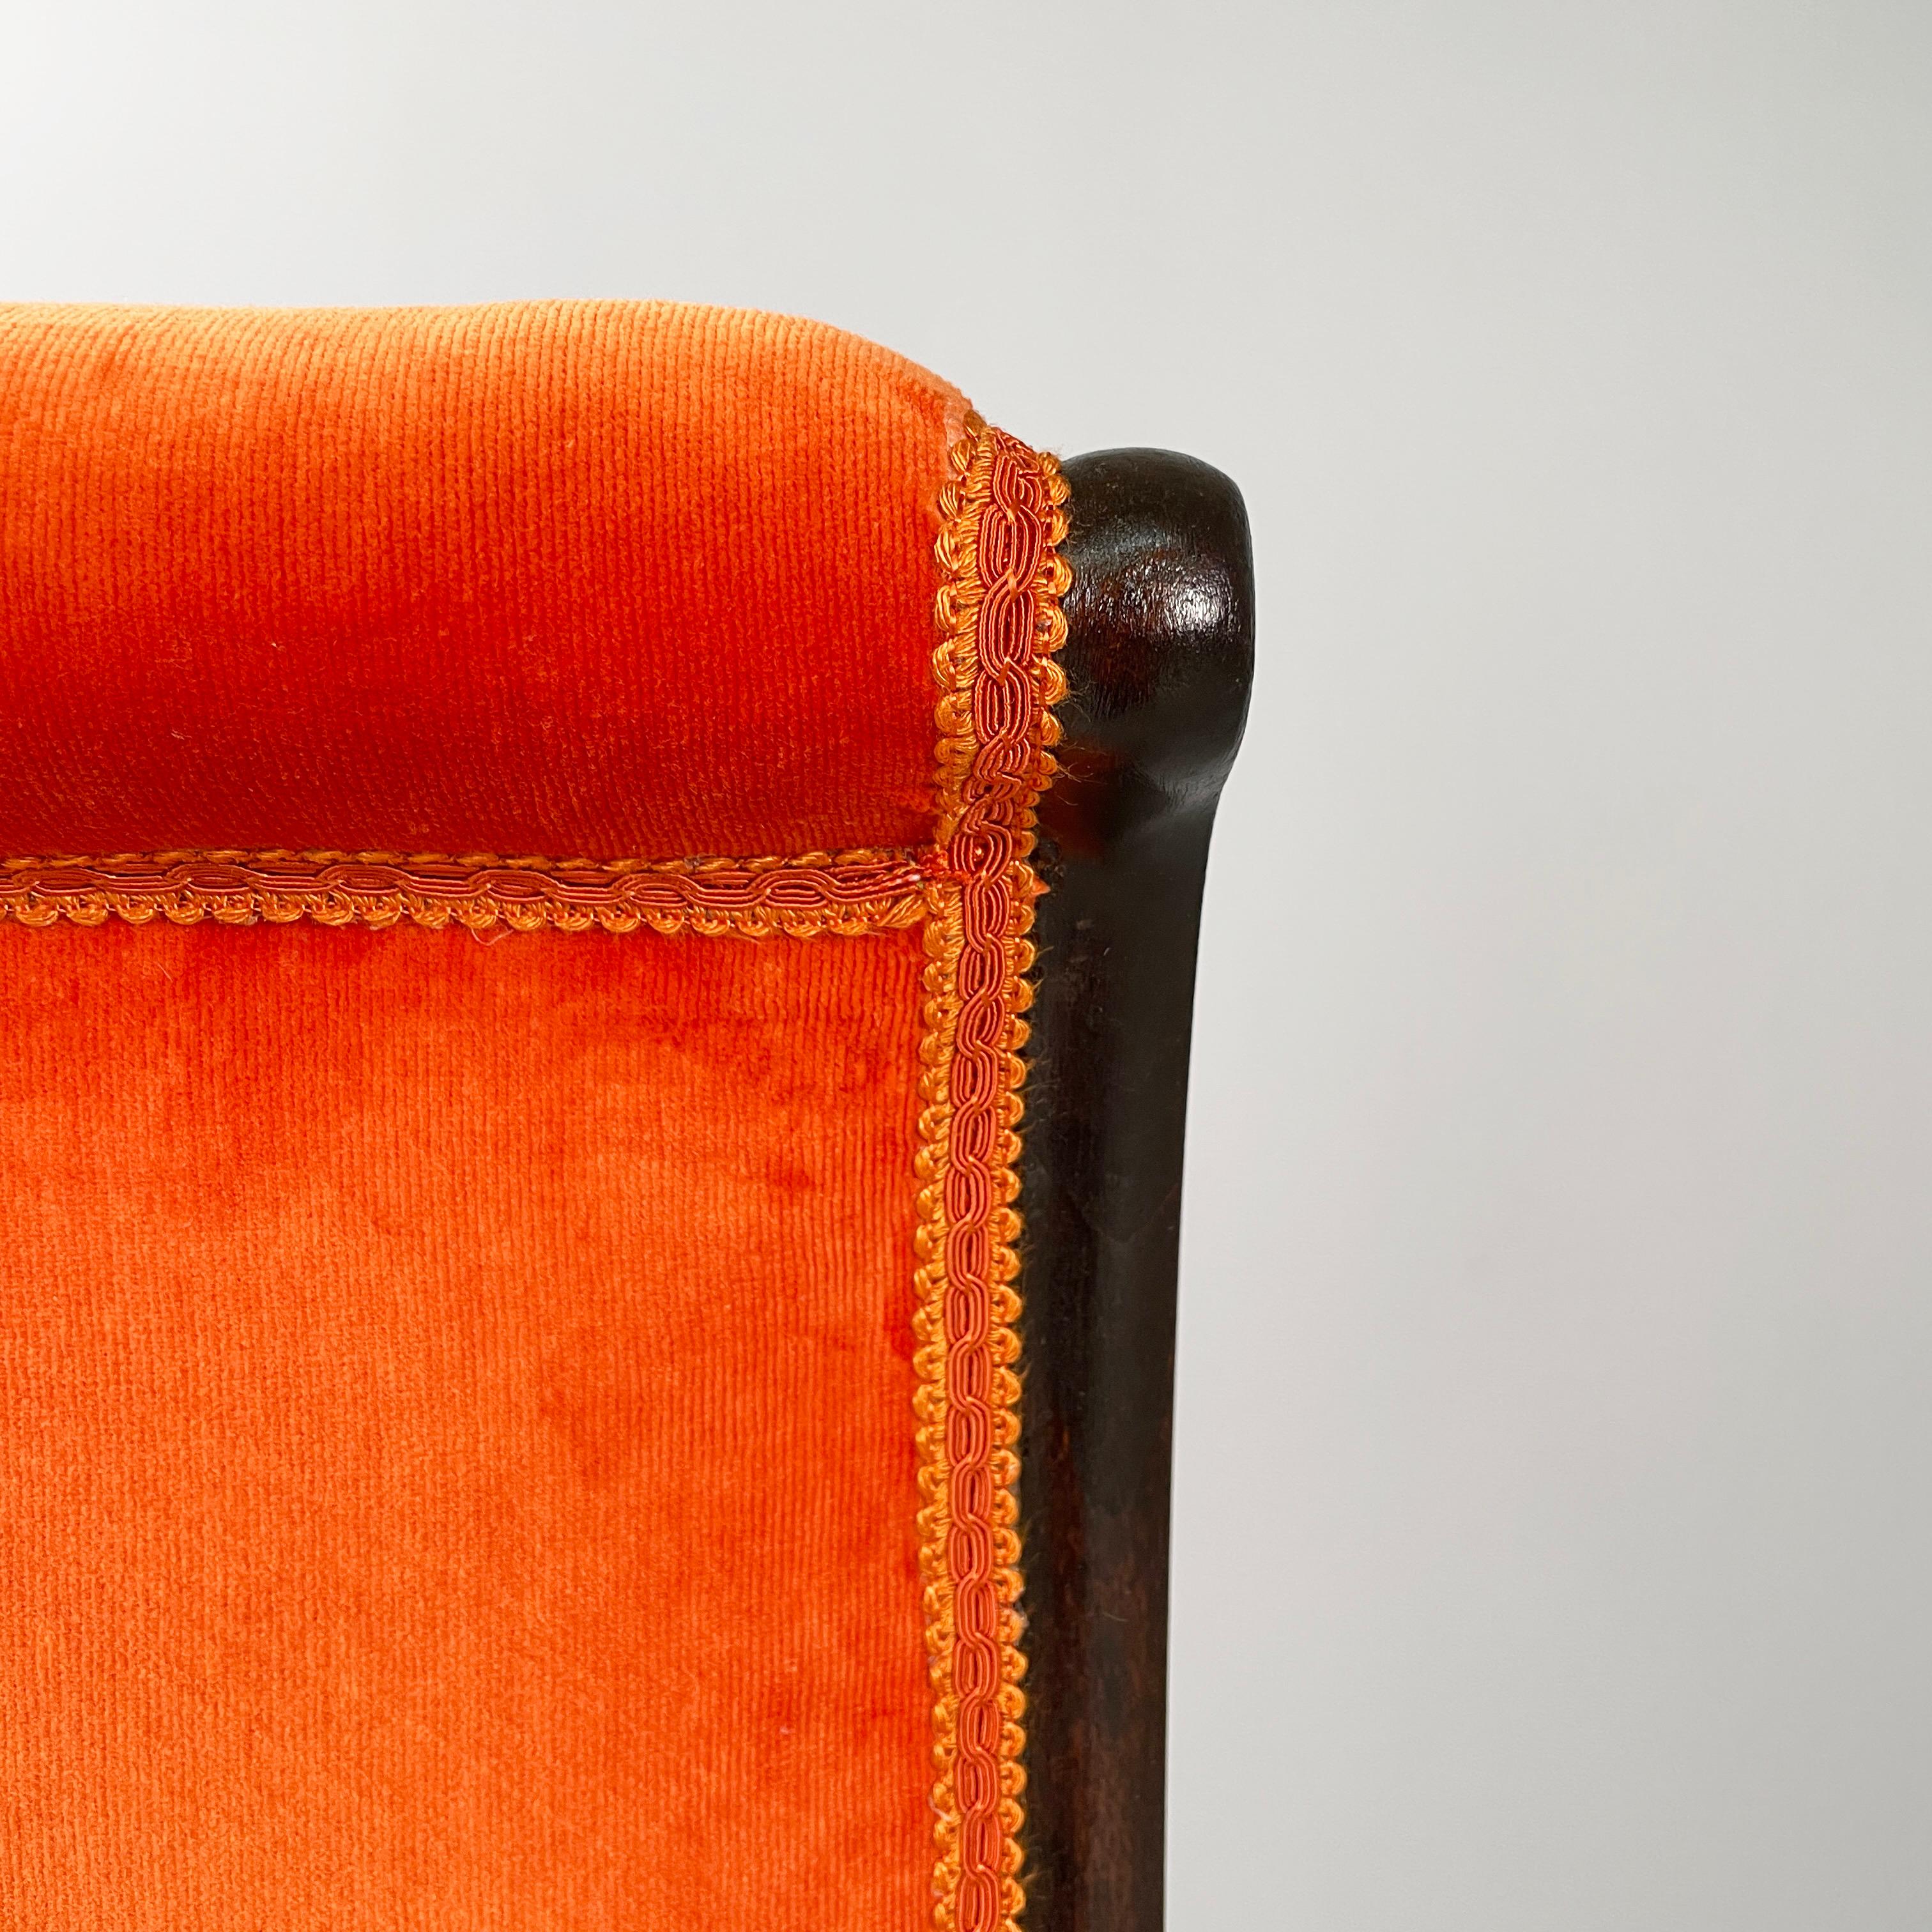 Danish mid-century modern Chair in orange velvet and dark wood, 1950s For Sale 9